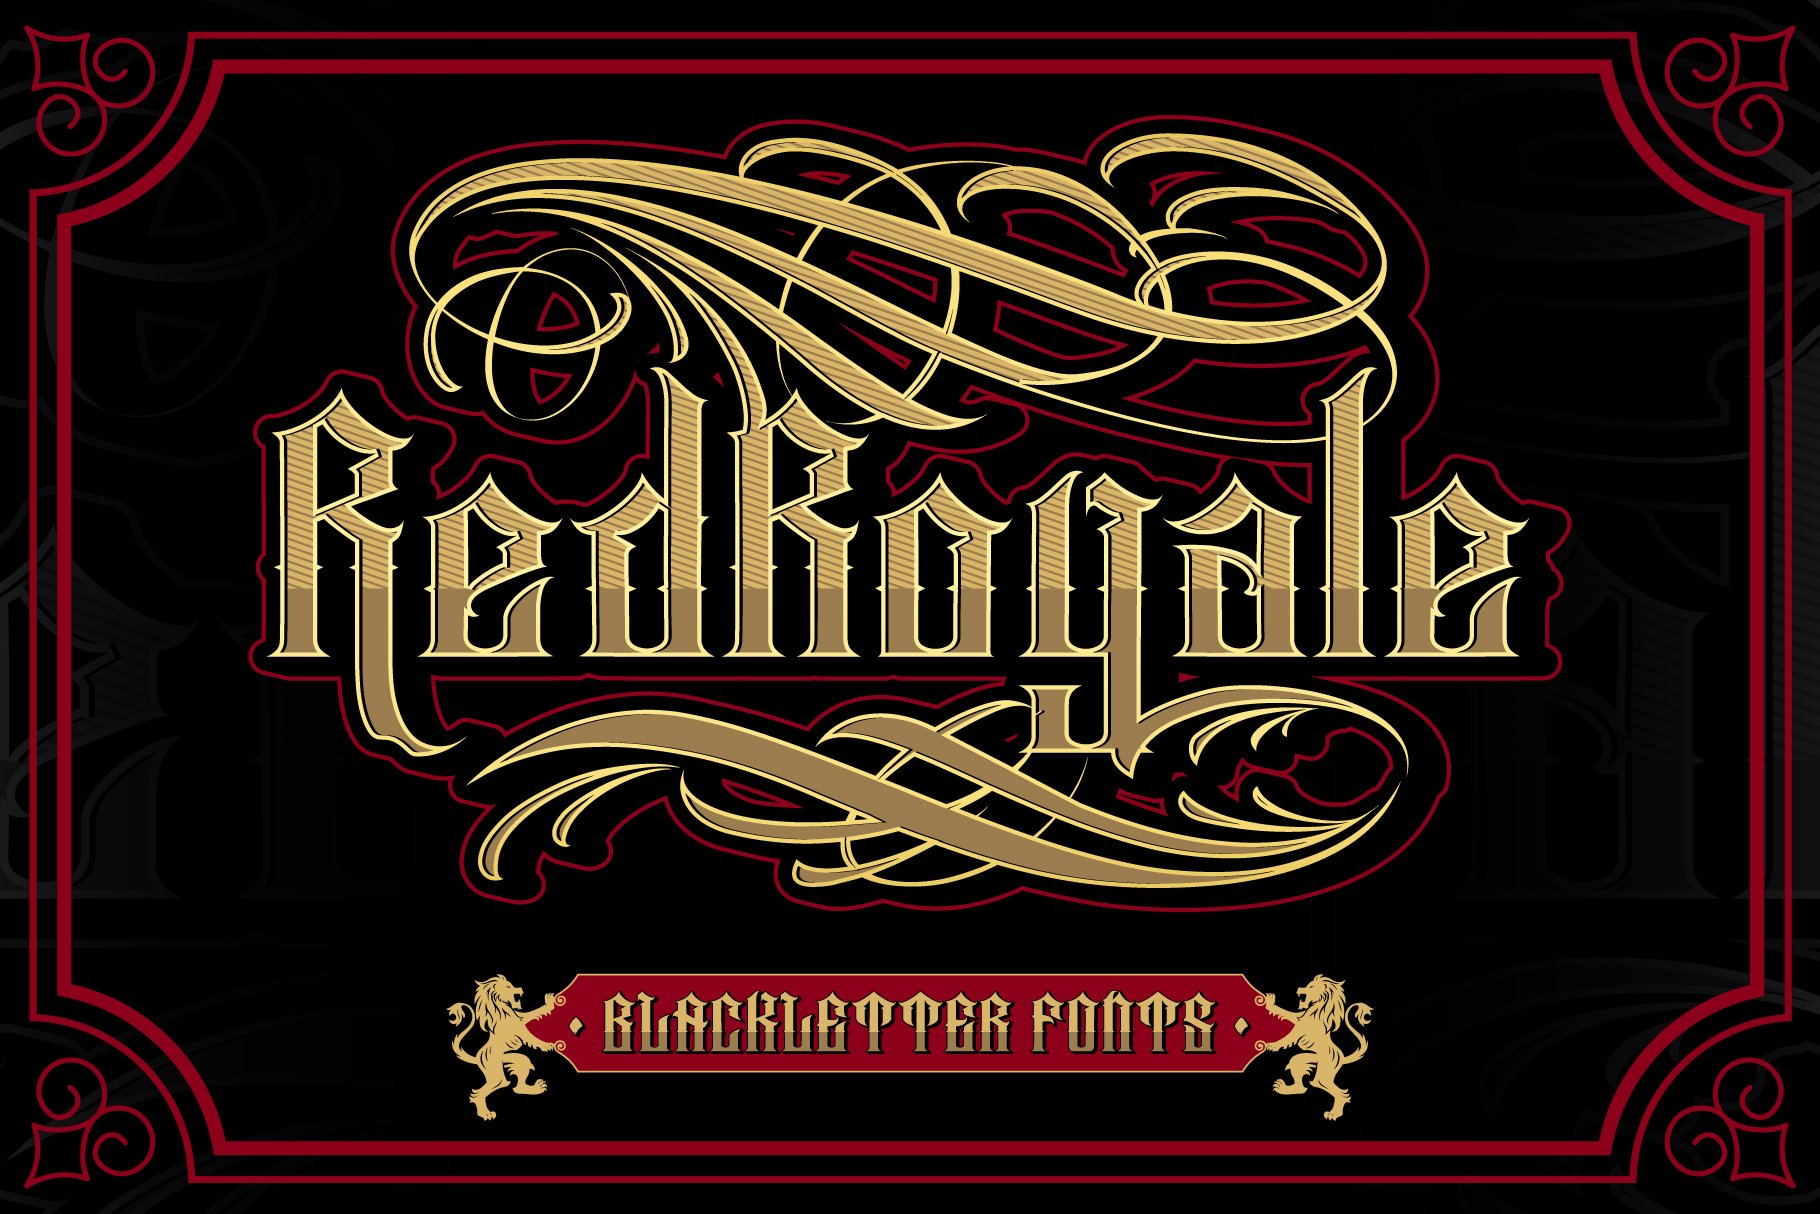 Red Royale – Blackletter Fonts cover image.